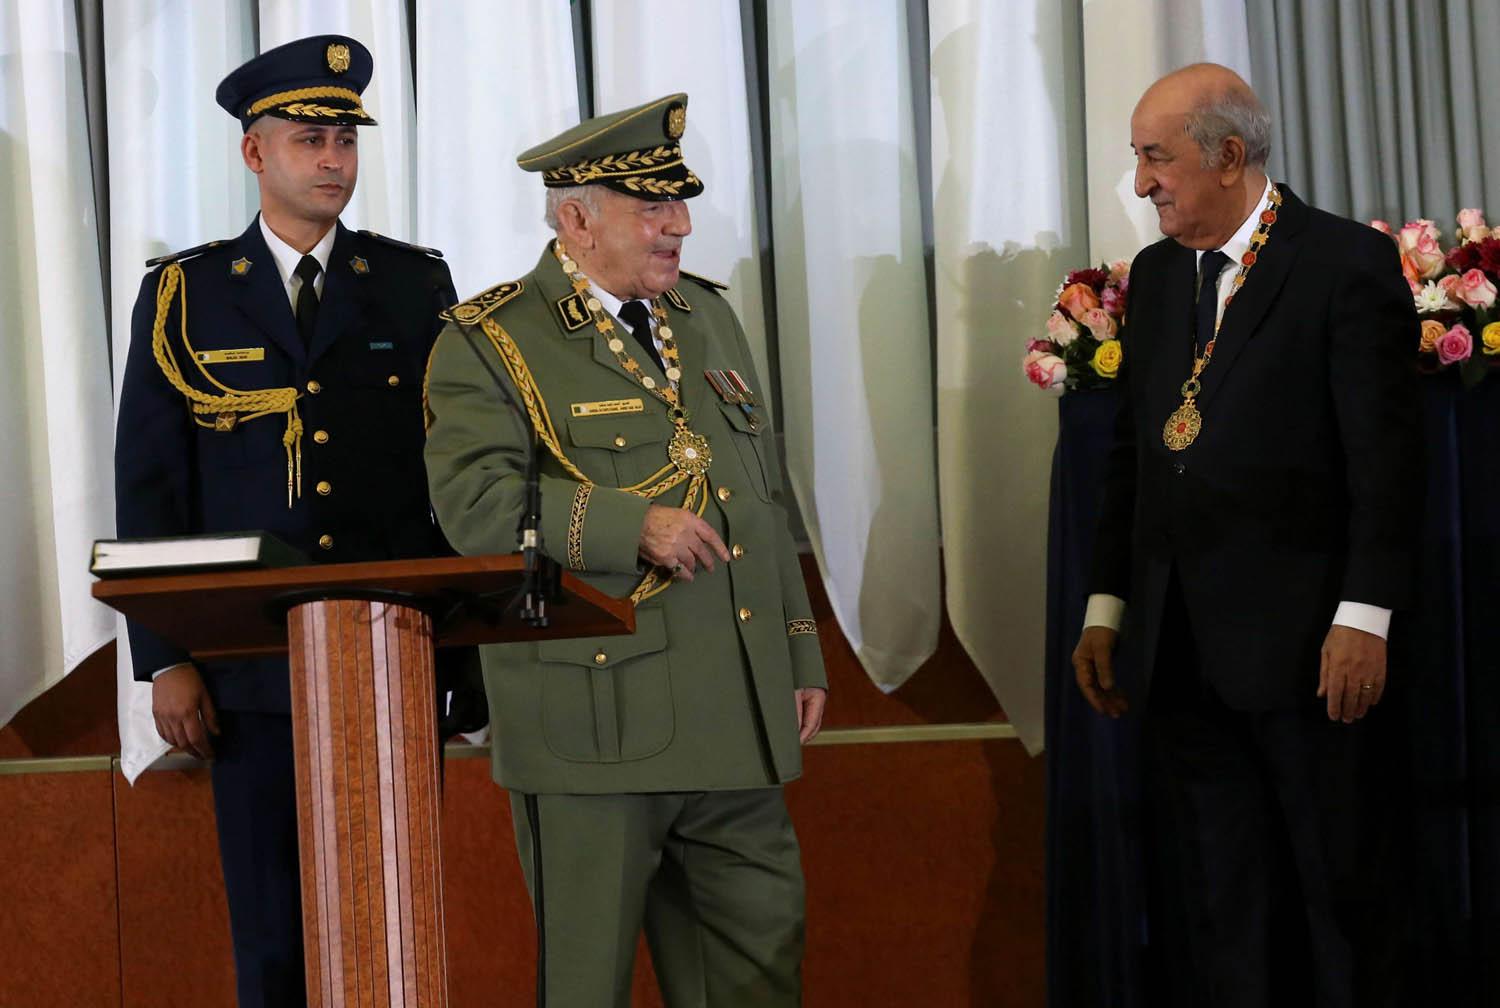 الرئيس الجزائري الجديد عبدالمجيد تبون مع قائد الجيش أحمد قايد صالح بعد أداء الرئيس القسم